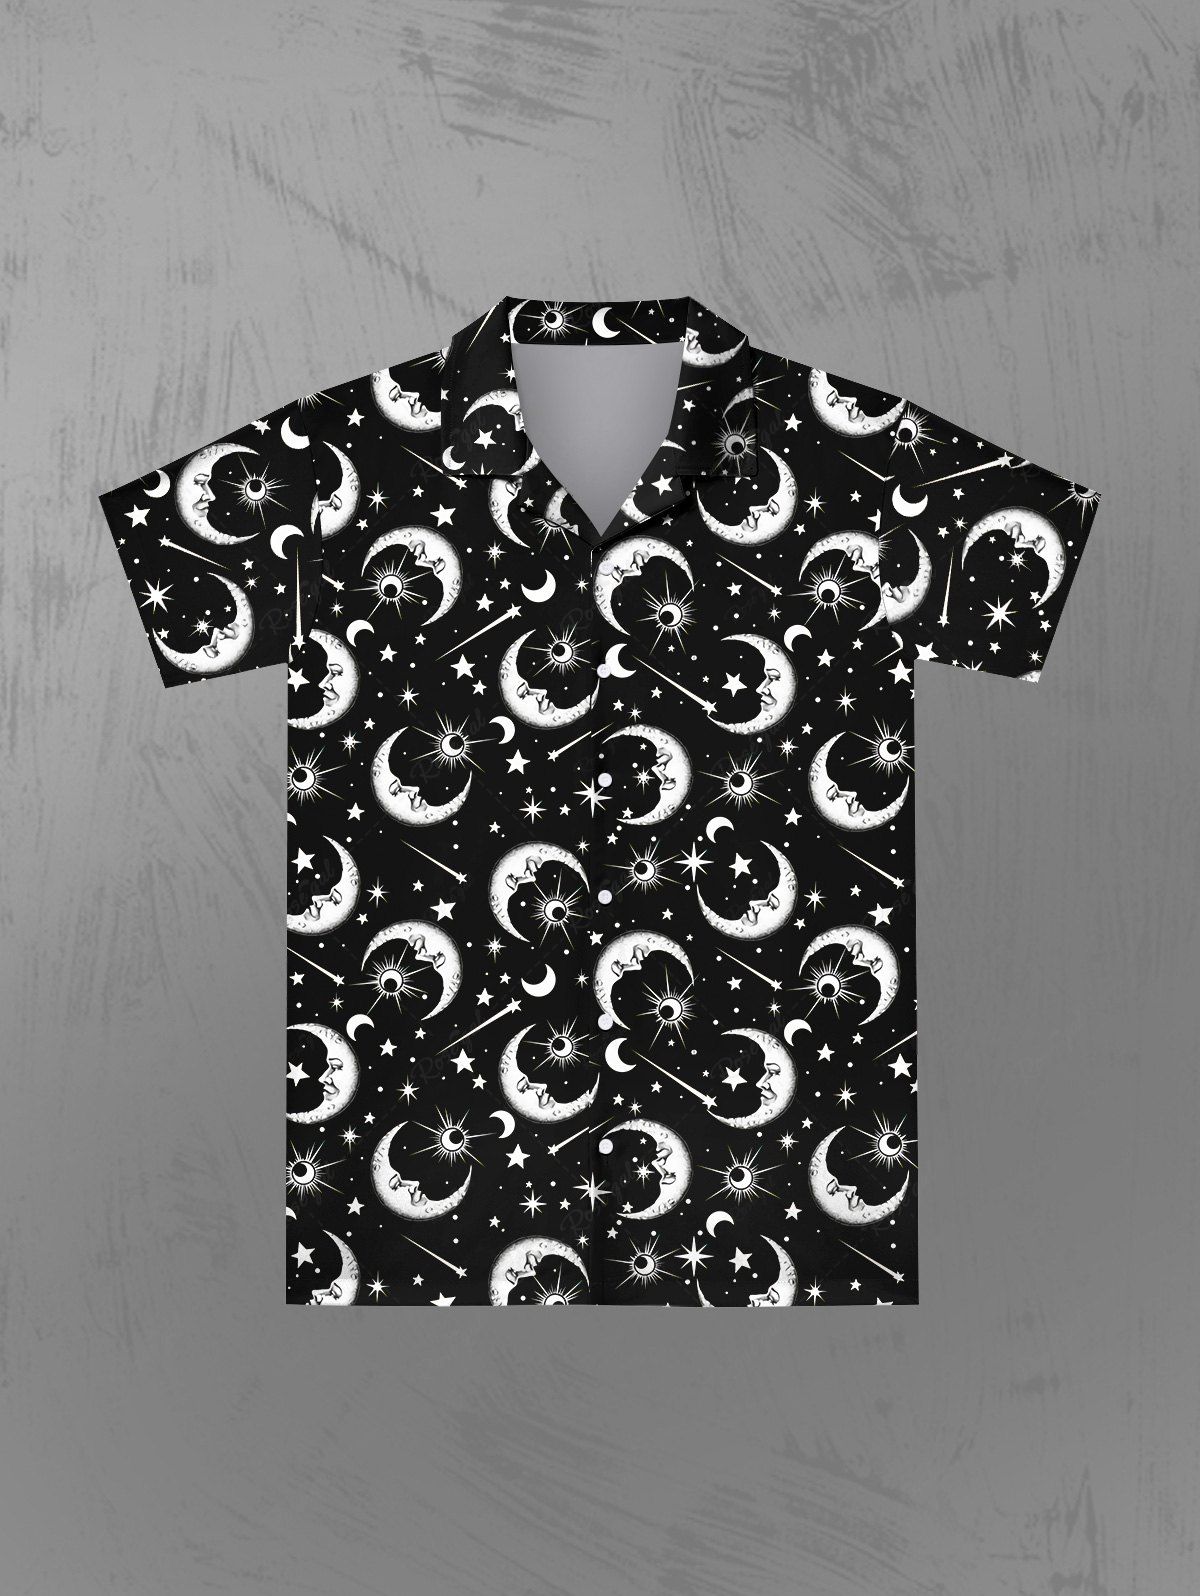 Chic Gothic Galaxy Sun Moon Star Print Button Down Shirt For Men  